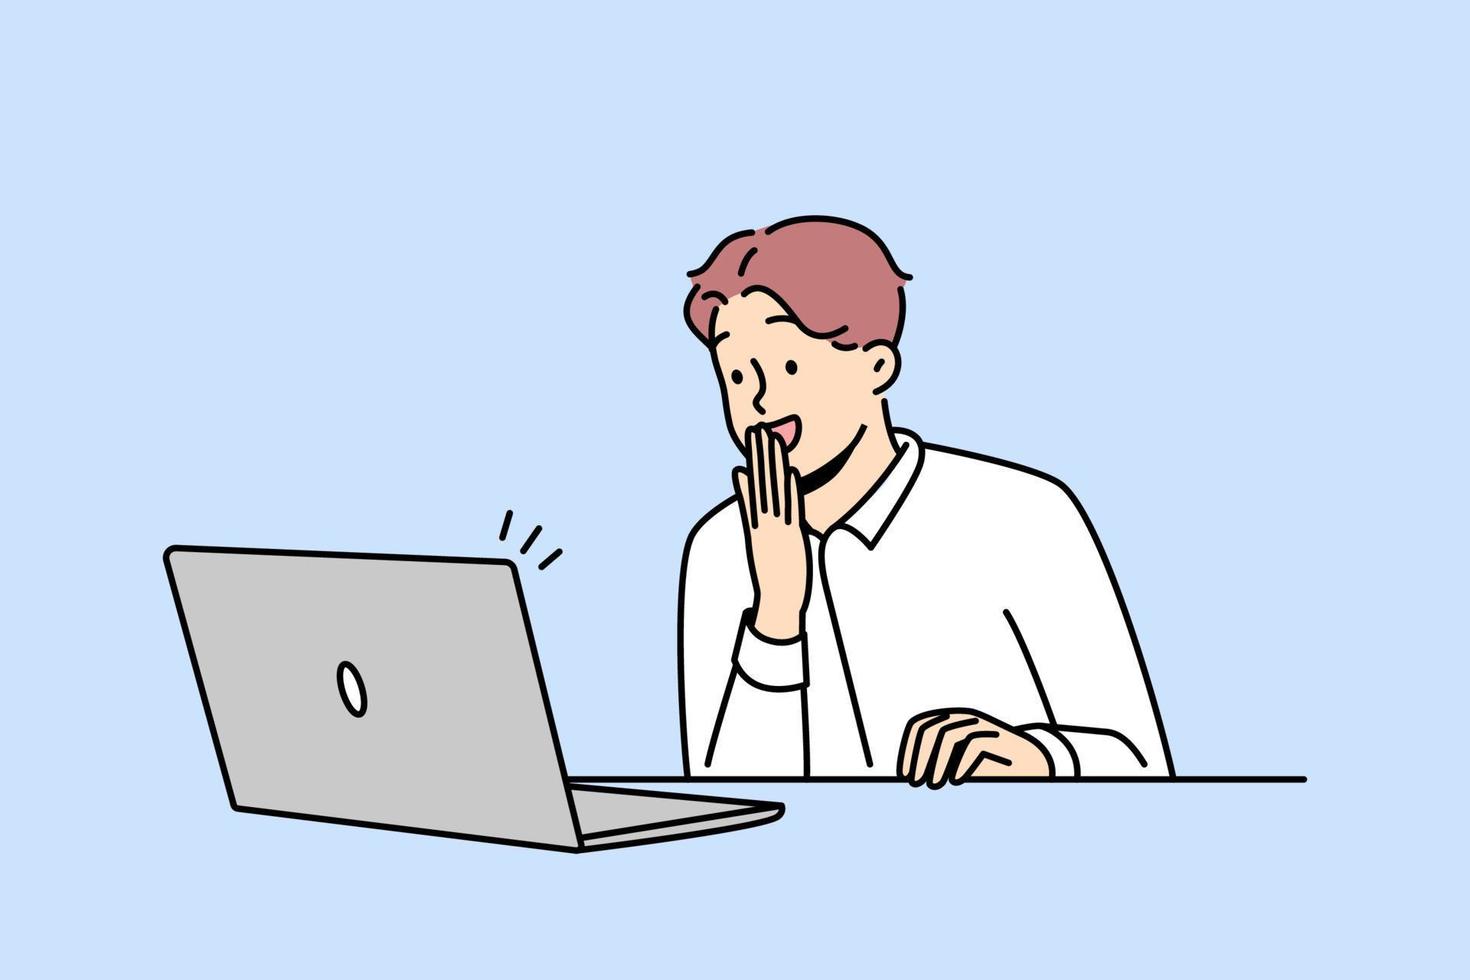 empregado masculino feliz olha para a tela do laptop animado com boas notícias online. sorridente empresário chocado com mensagem agradável no computador. ilustração vetorial. vetor